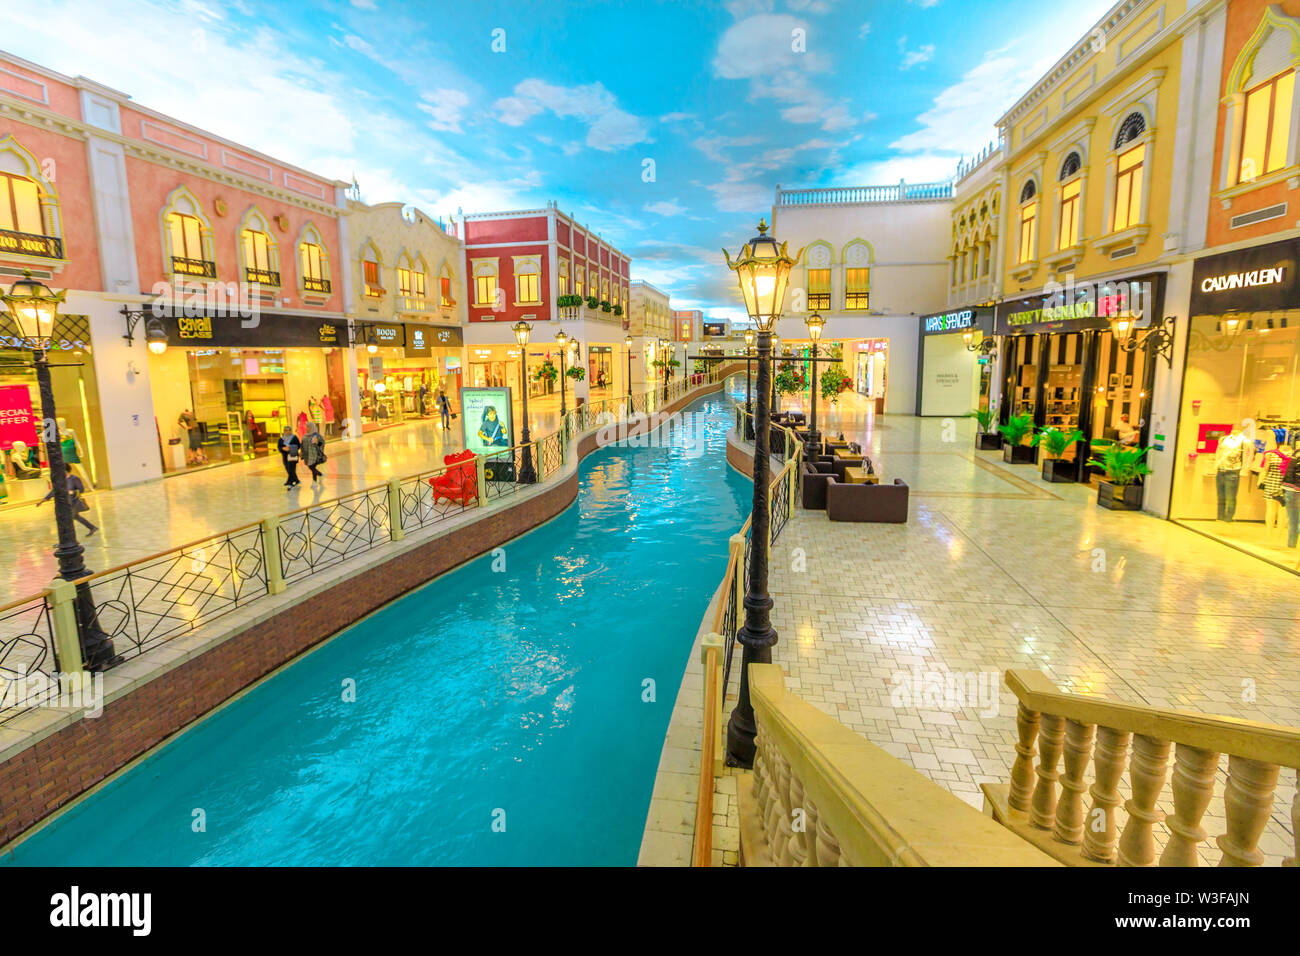 Doha, Qatar - 21 Febbraio 2019: venezia canal nel Villaggio Mall, un centro commerciale nella zona di aspirano. Marchi di lusso, negozi costosi e negozi esclusivi Foto Stock